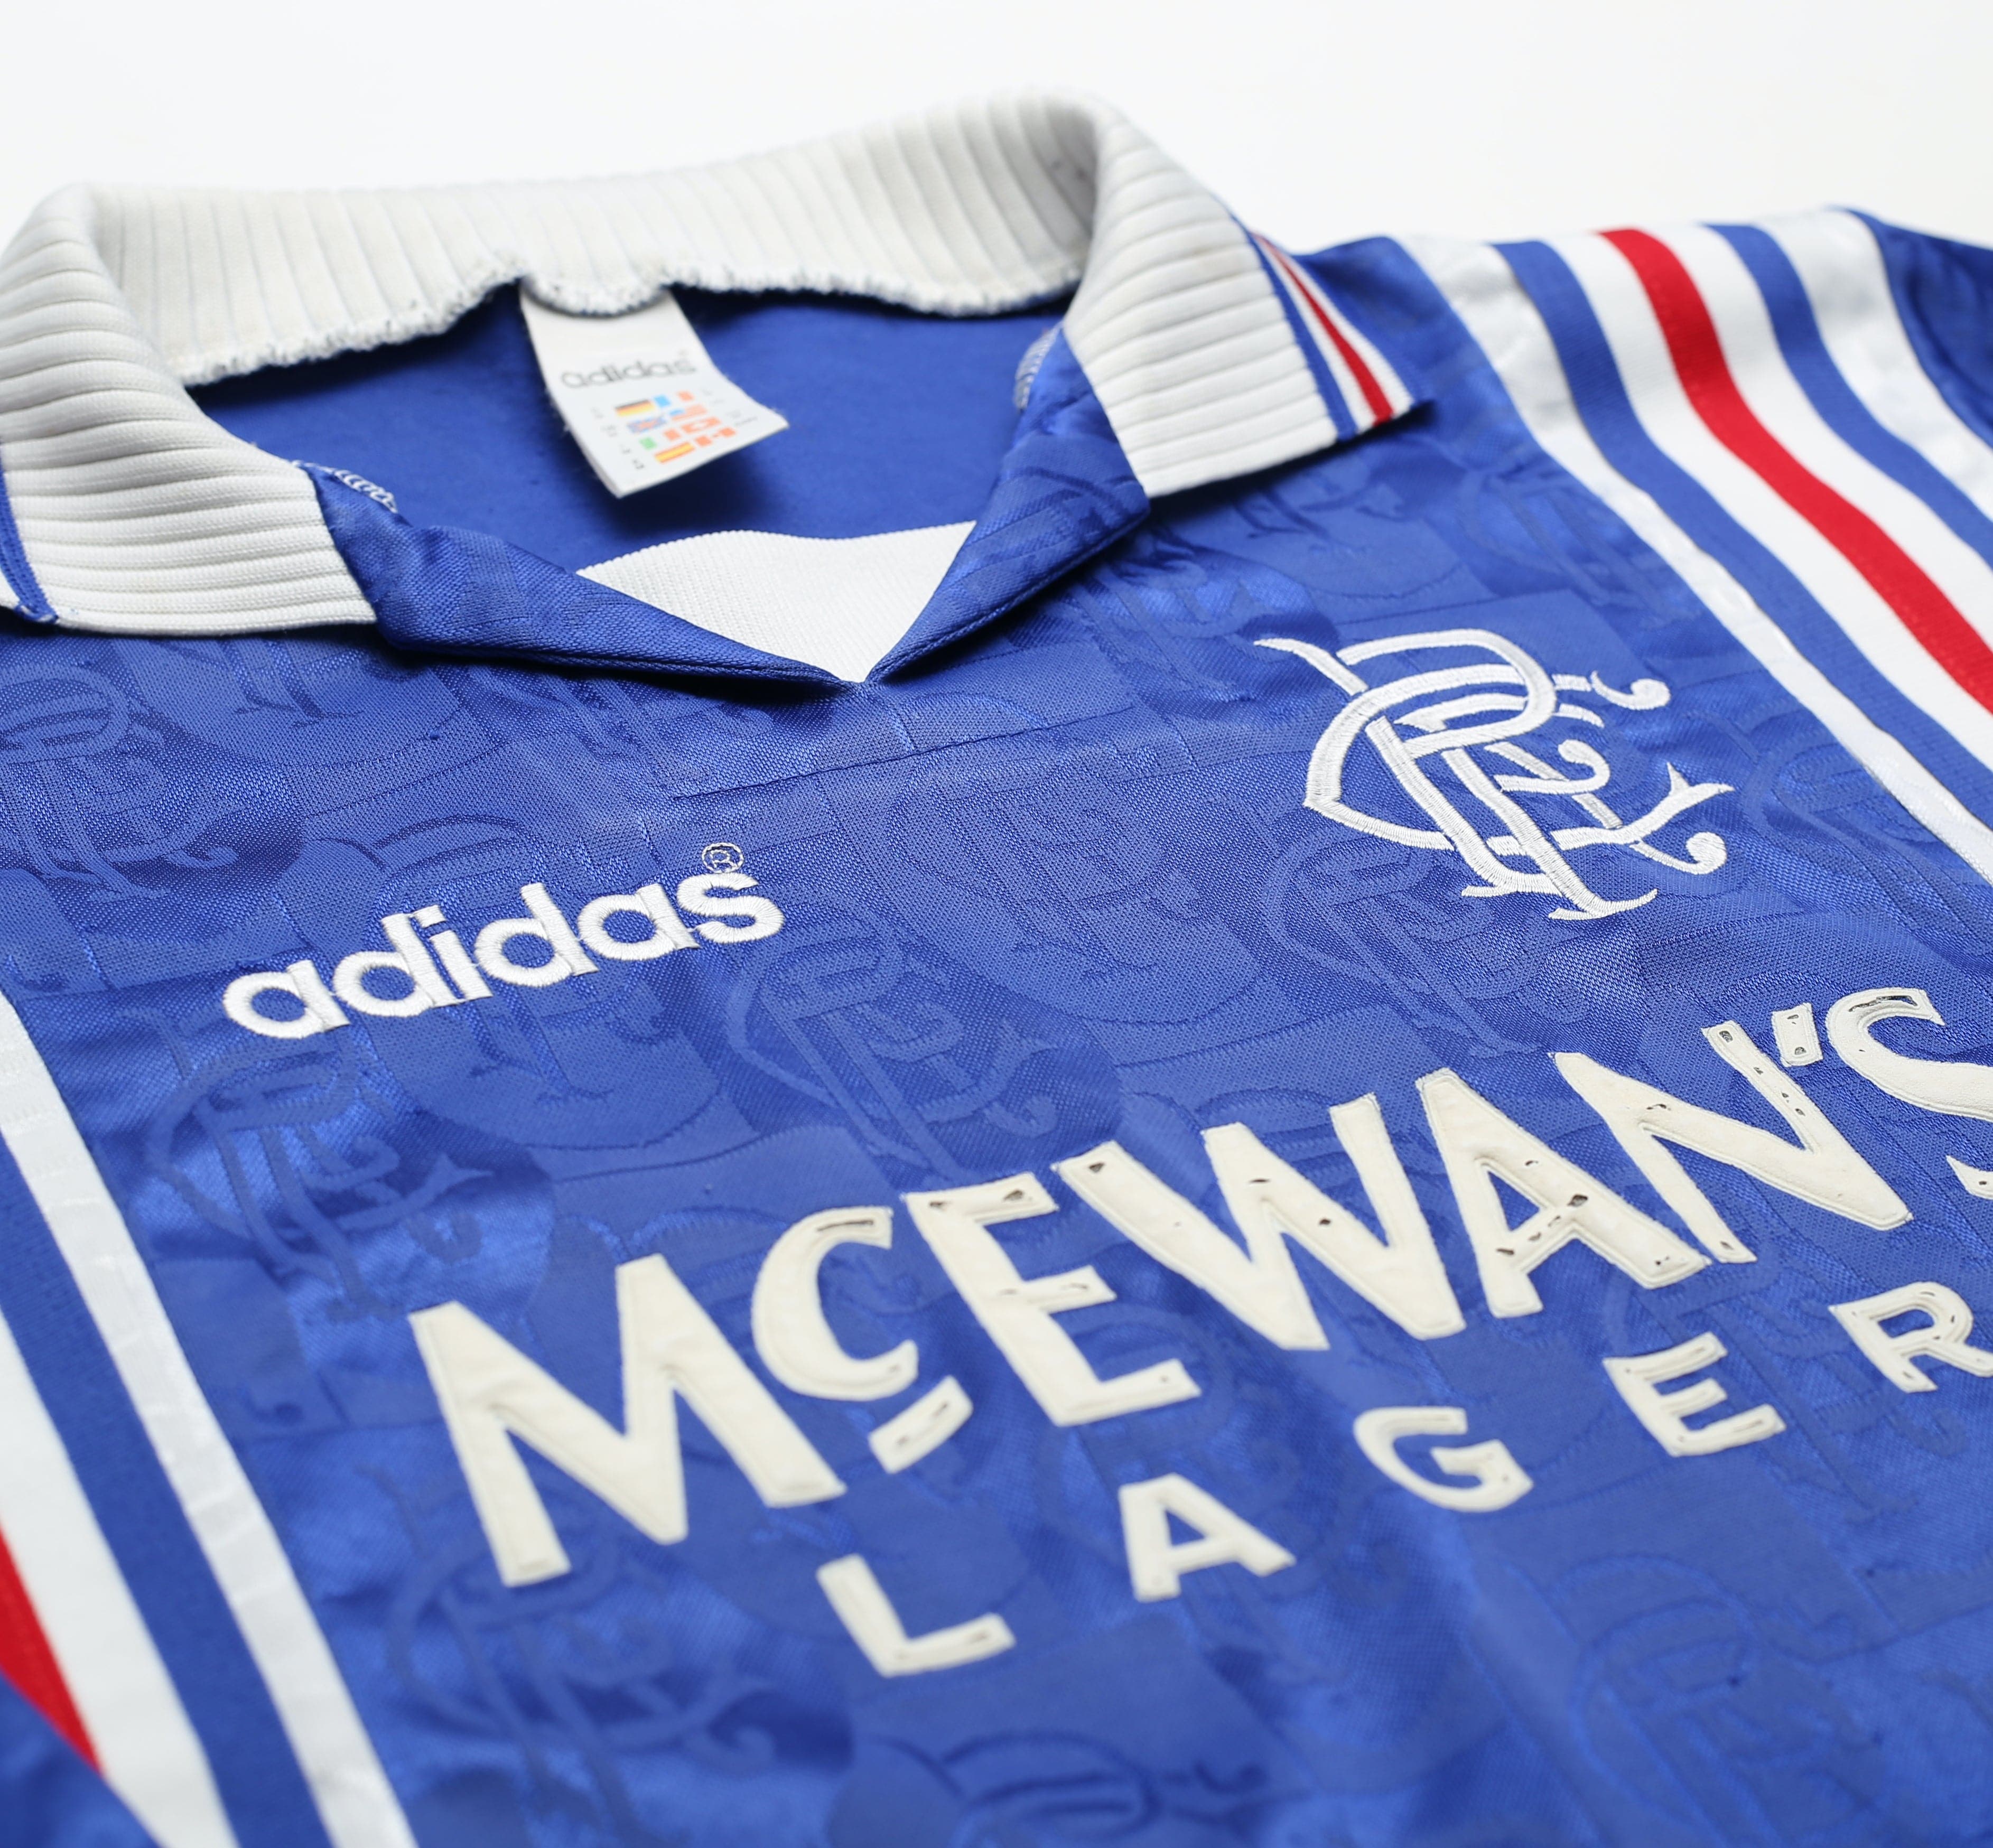 Rangers 1996-97 Home Kit